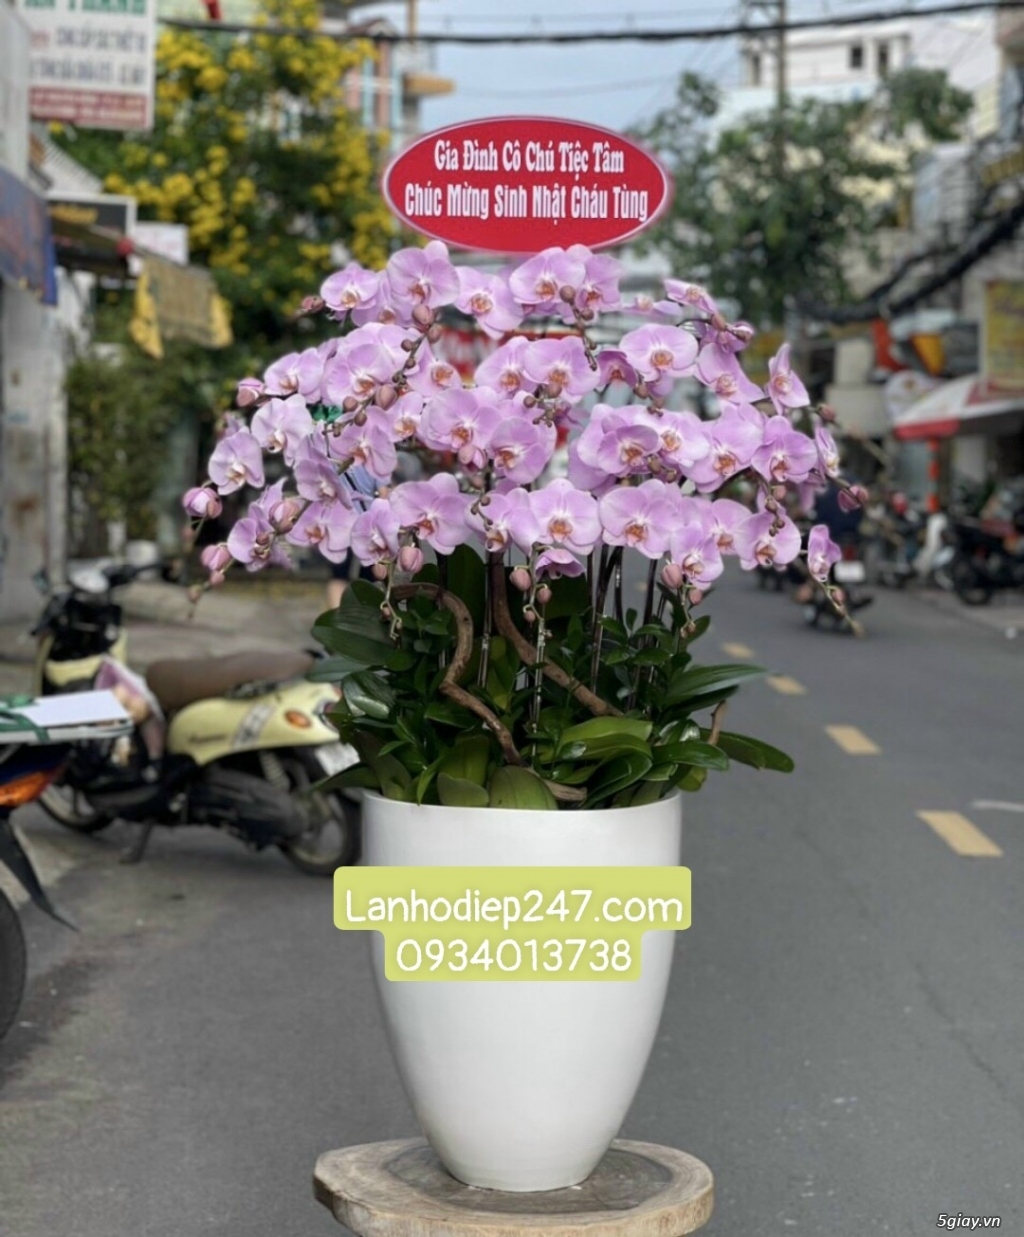 Shop hoa tươi Lan Hồ Điệp uy tín chất lượng số 1 Sài Gòn 0934013738